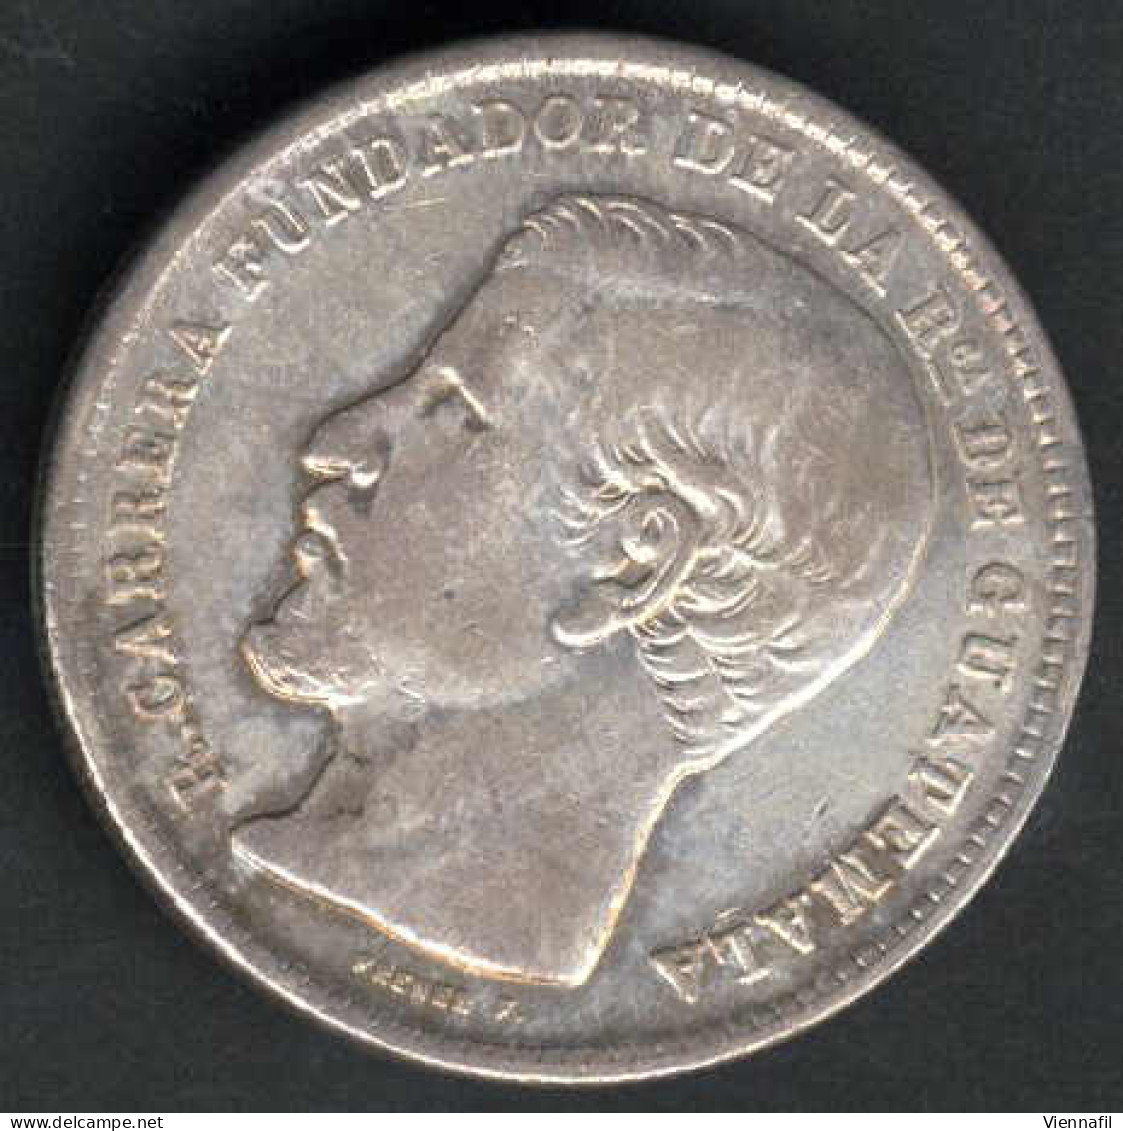 50 Centavos, 1 Peso, 1870 und 1963, Lot mit vier Silbermünzen, sehr schön bis unz., Feingewicht 48 Gr., KM 190.1, 195, 2